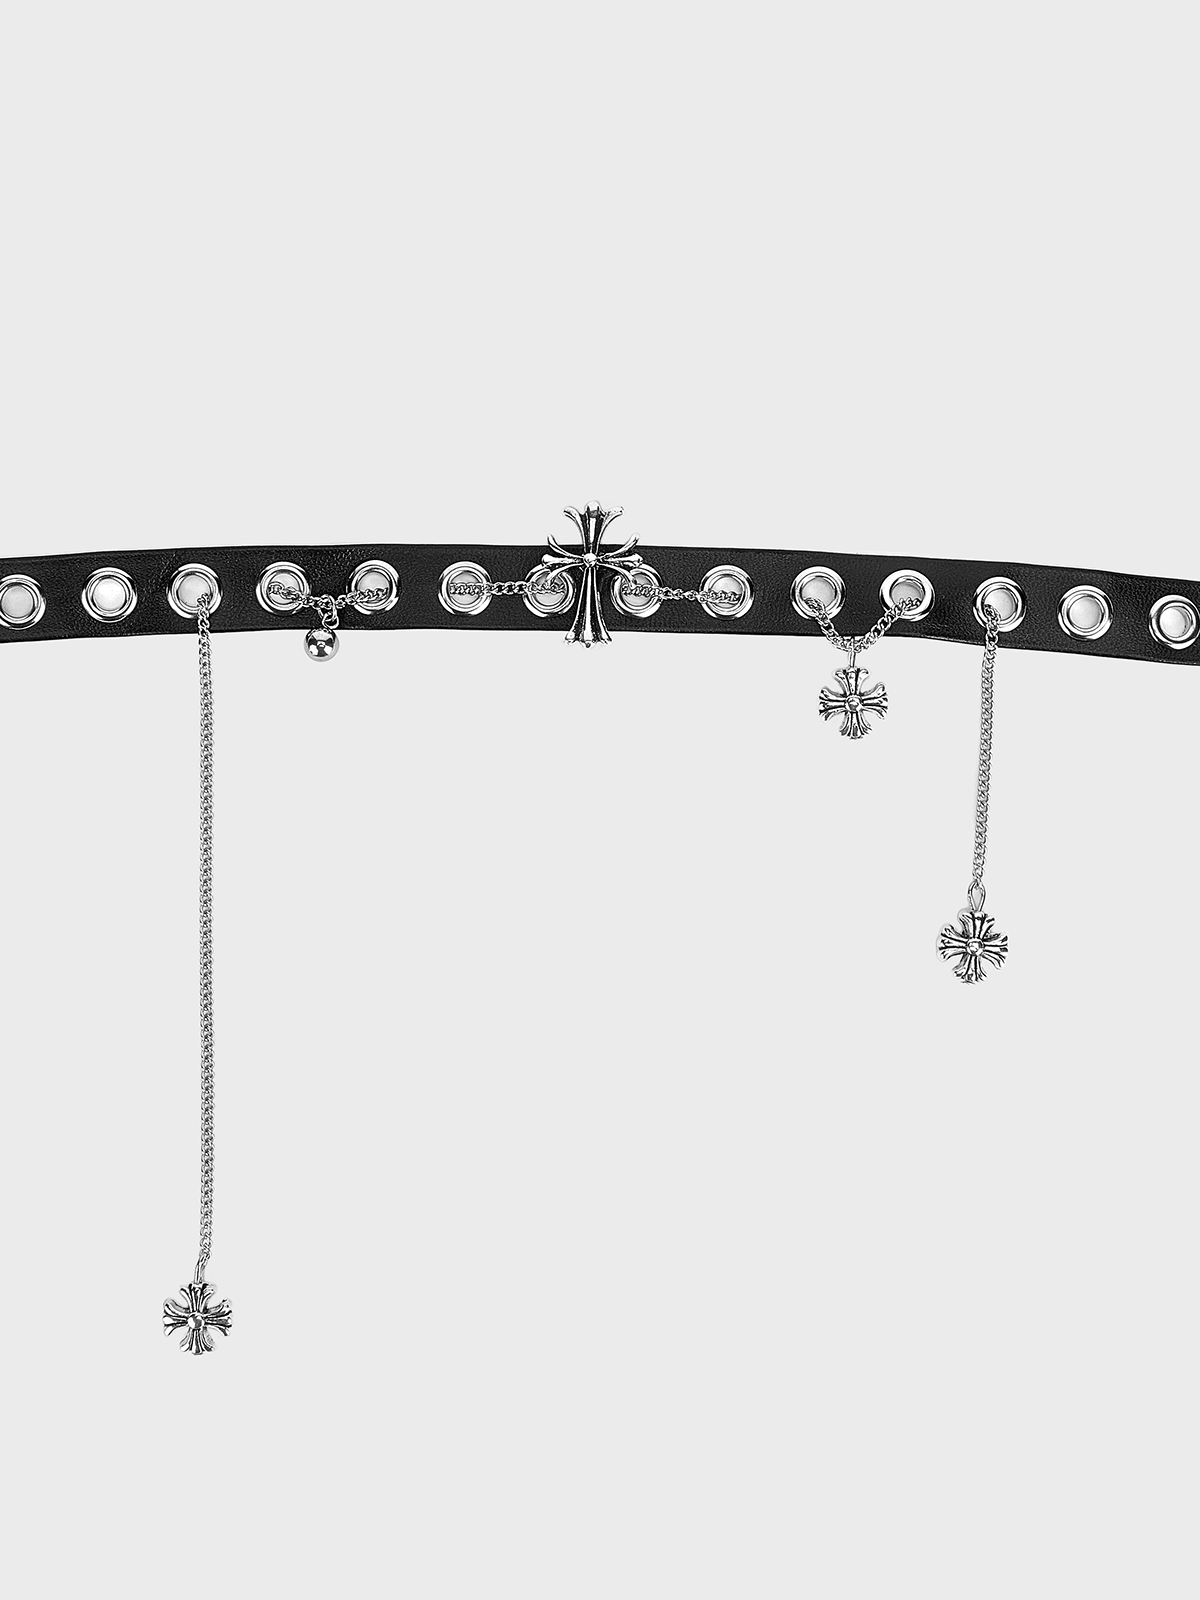 Metal Cross Necklace